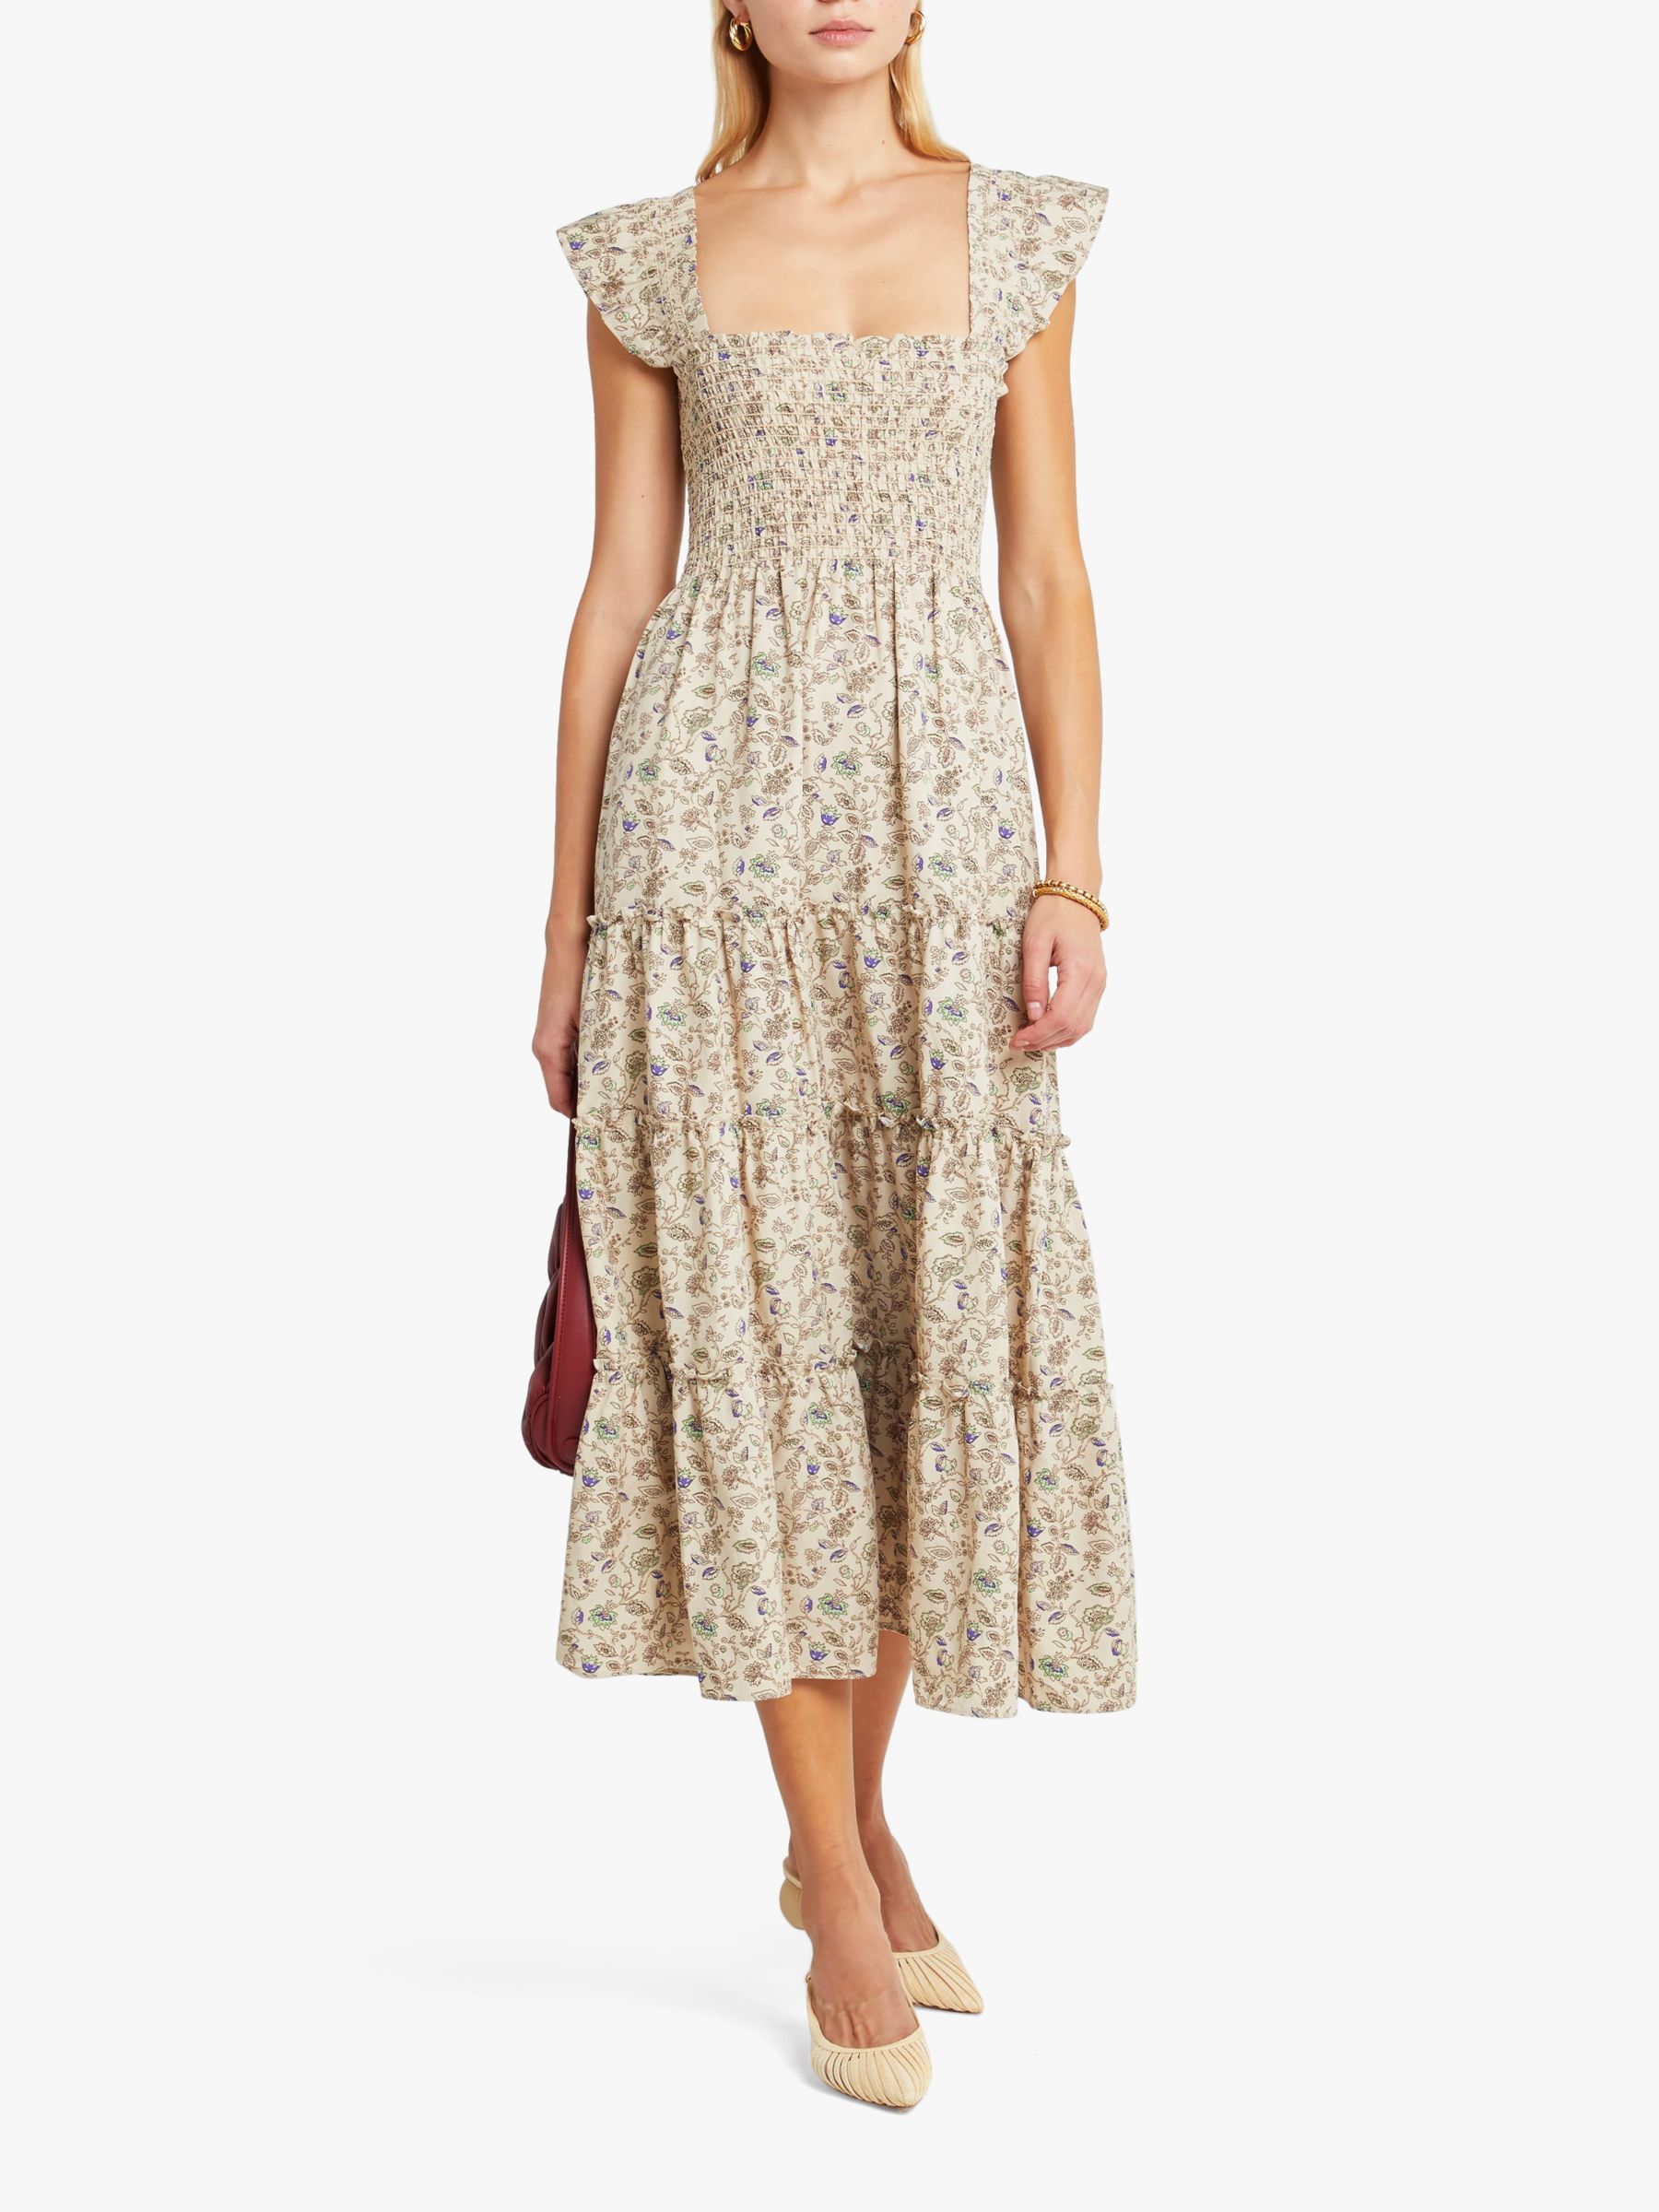 kourt Calypso Smocked Bodice Floral Print Midi Dress, Beige, XL